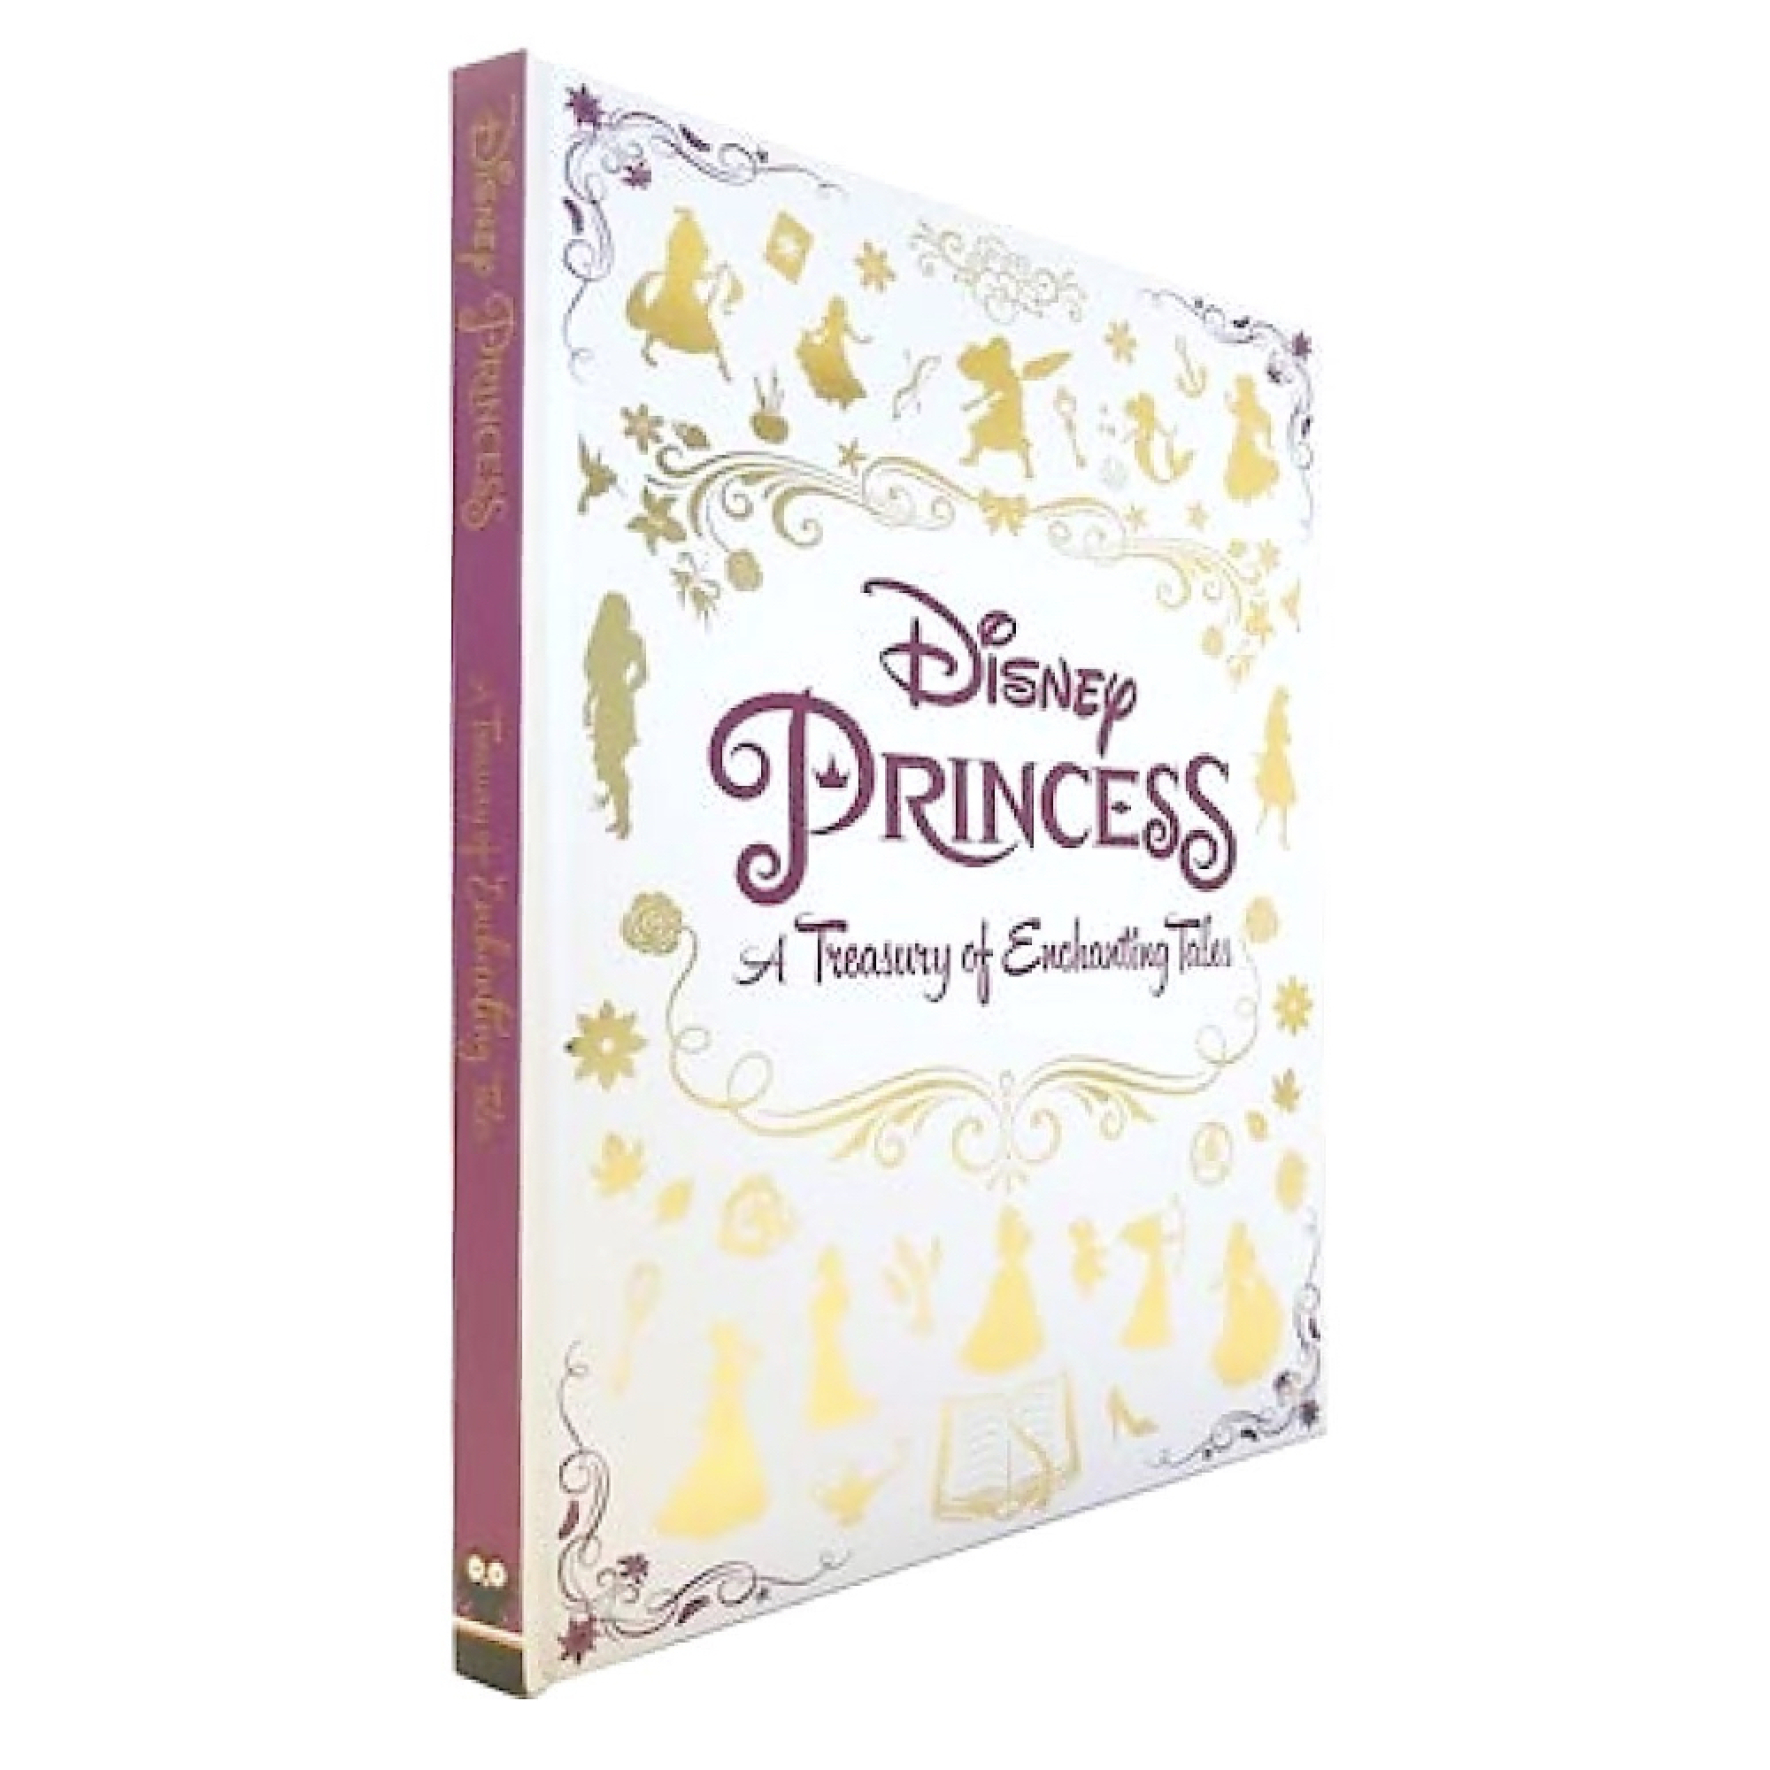  کتاب پرنسس های دیزنی Disney Princess A Treasury of Enchanting Tales 